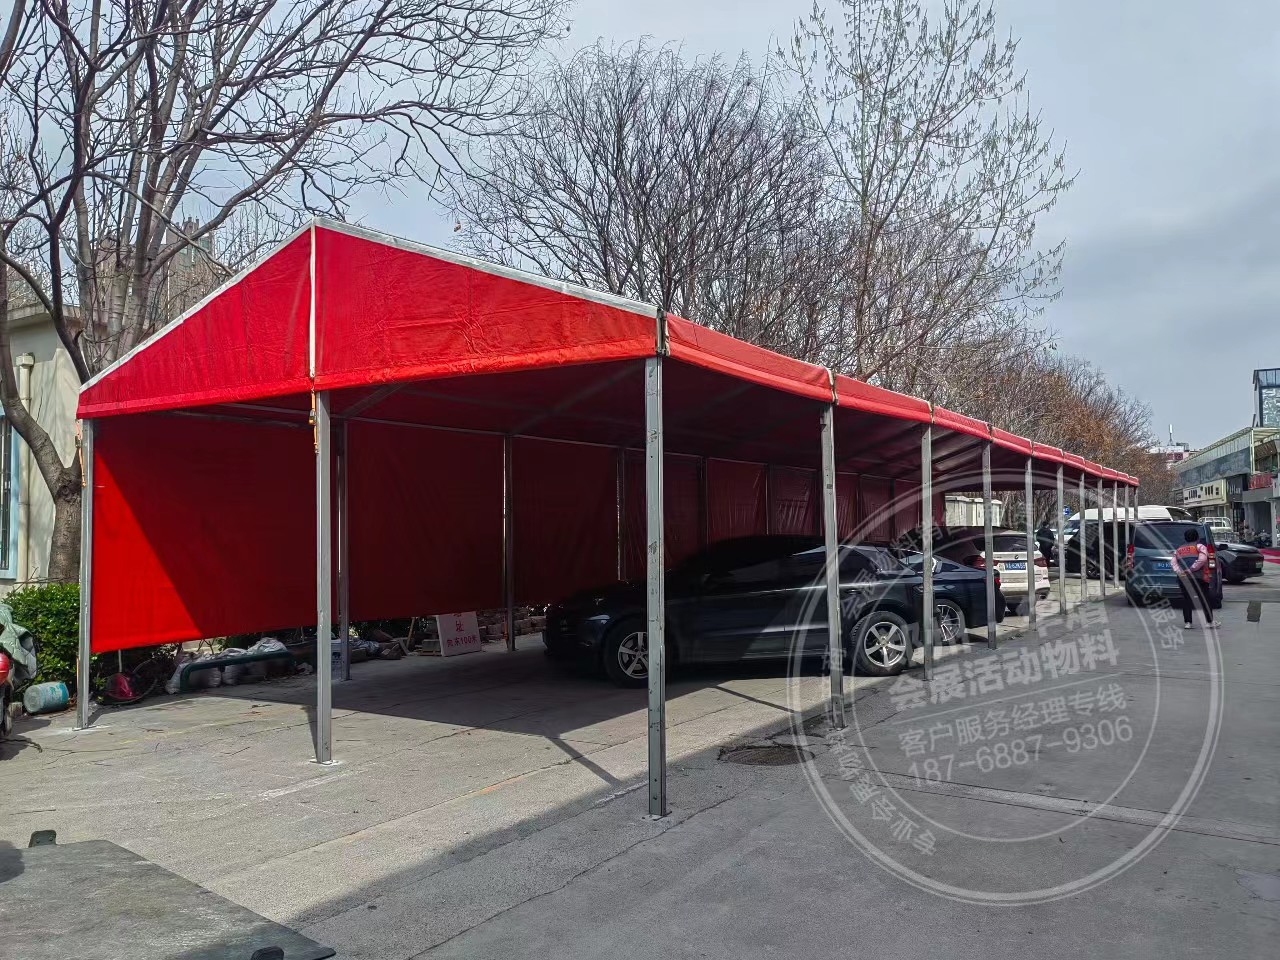  郑州锦艺轻纺城特卖会6米跨度红色篷